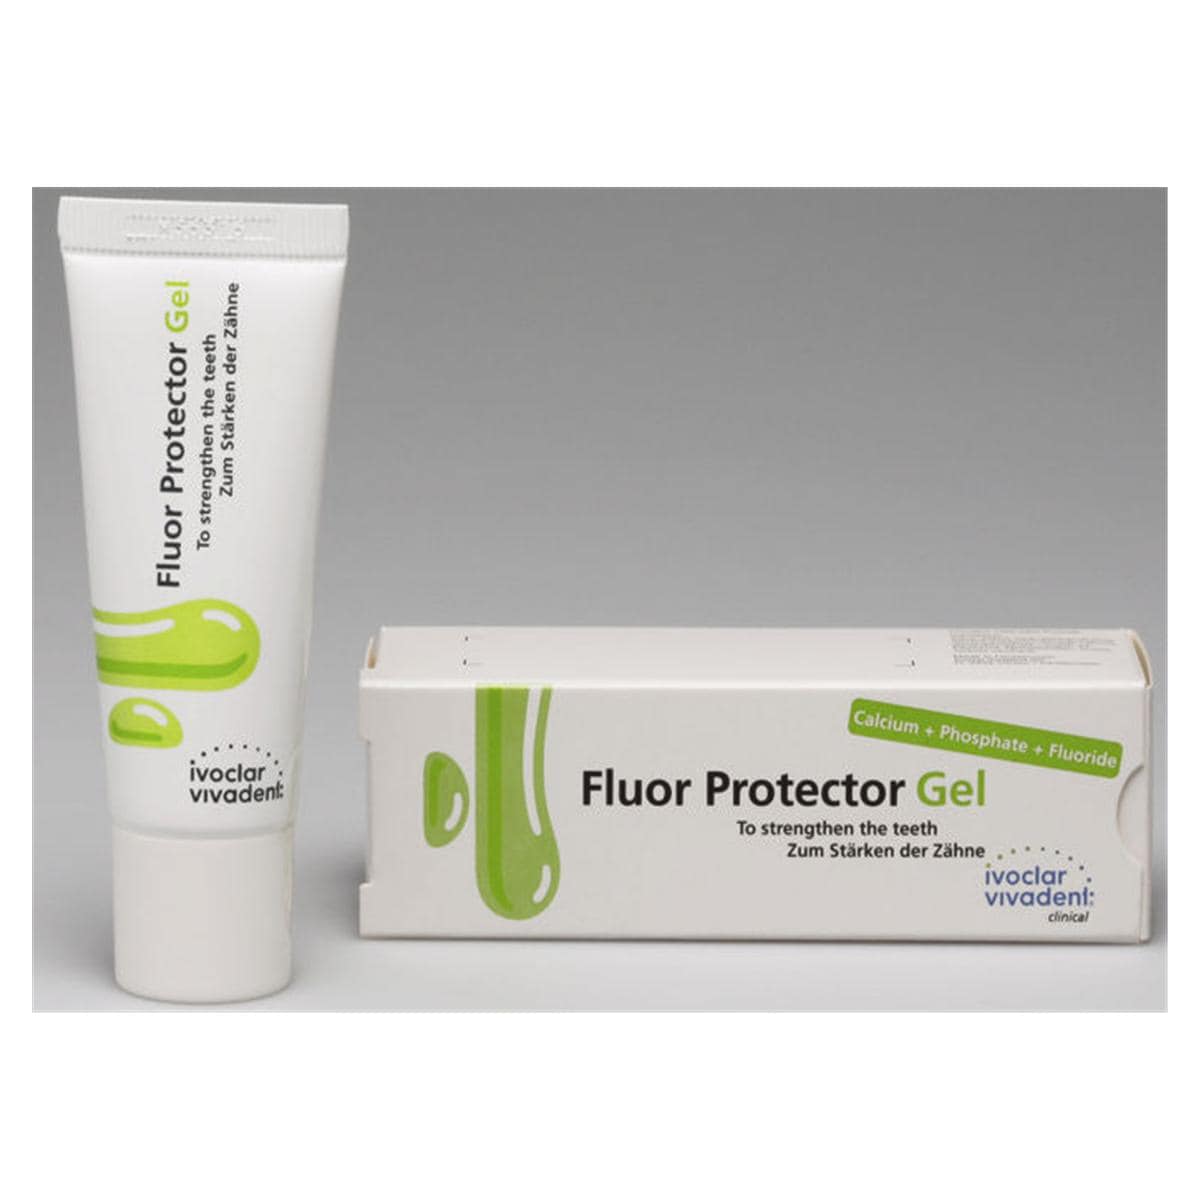 Fluor Protector - Gel - Tube, 20 g